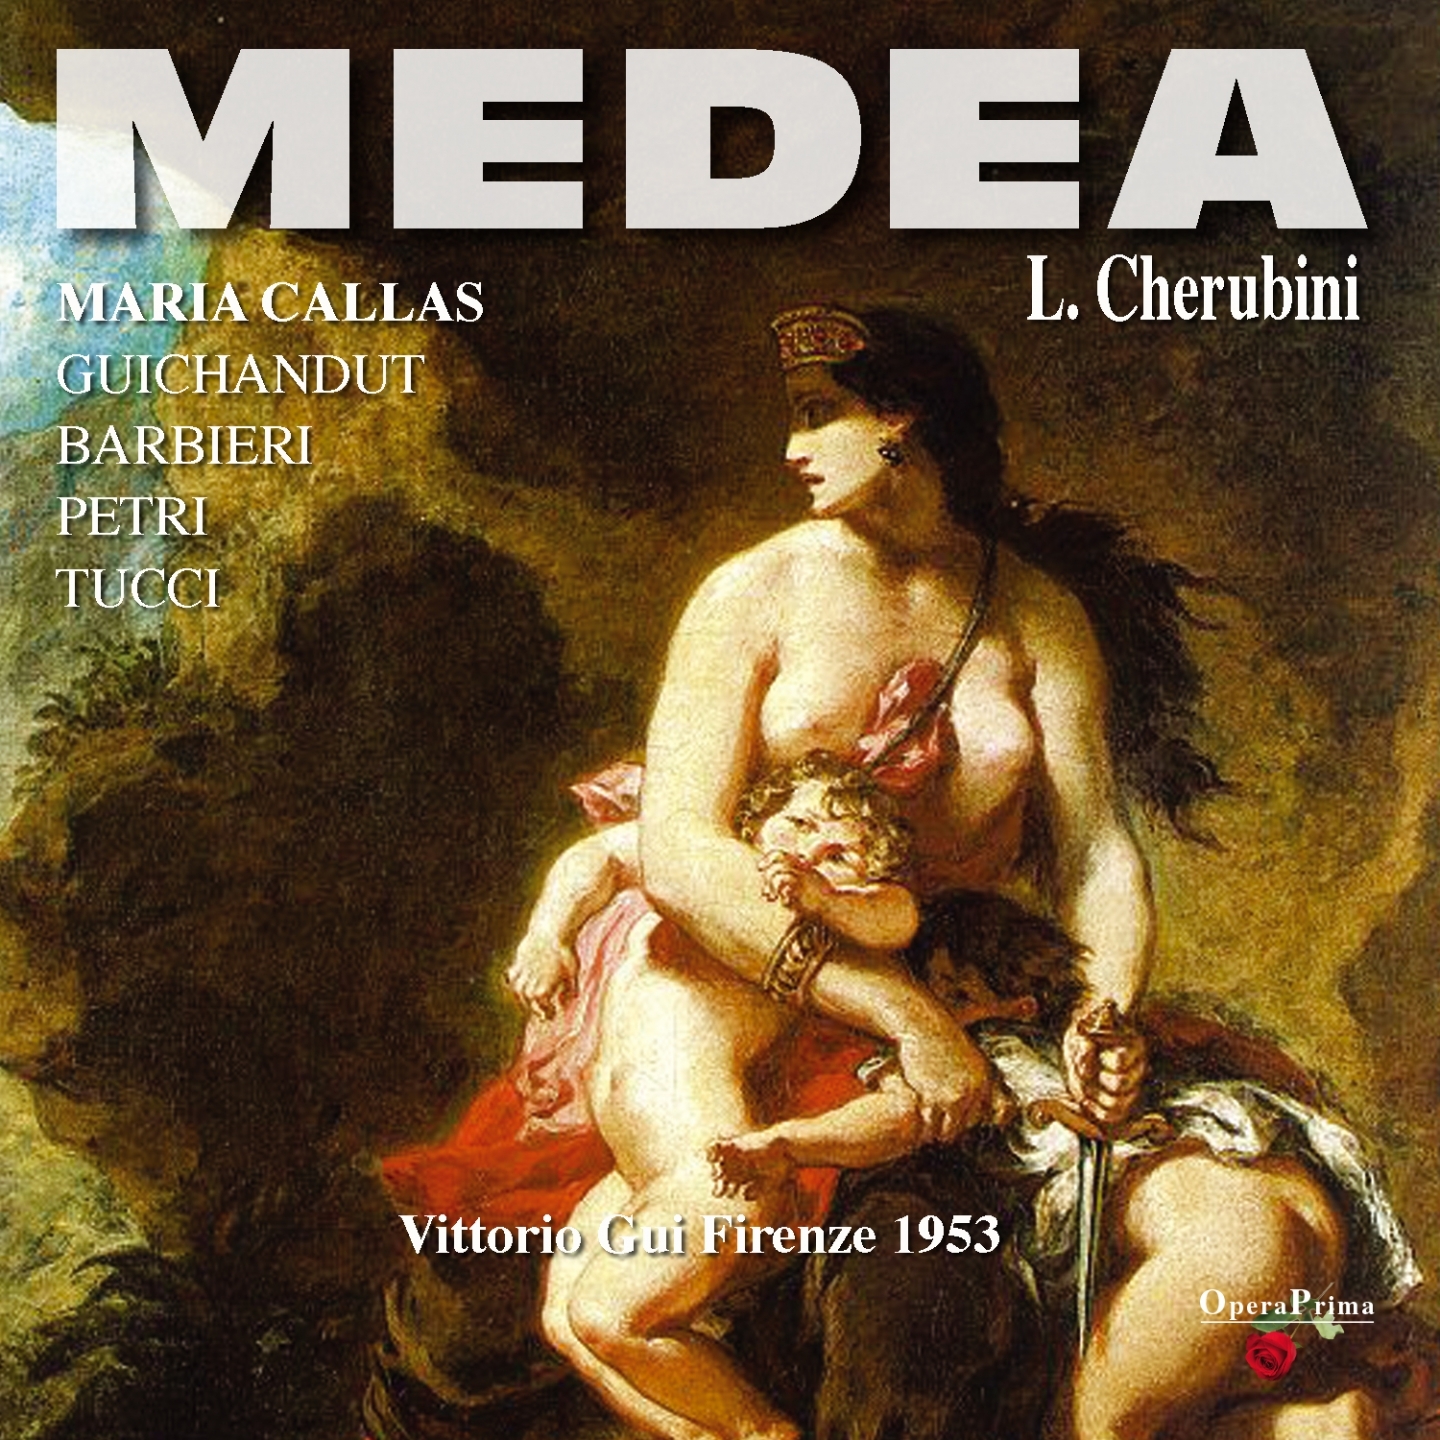 Medea : Act II - "Hai dato pronto ascolto"